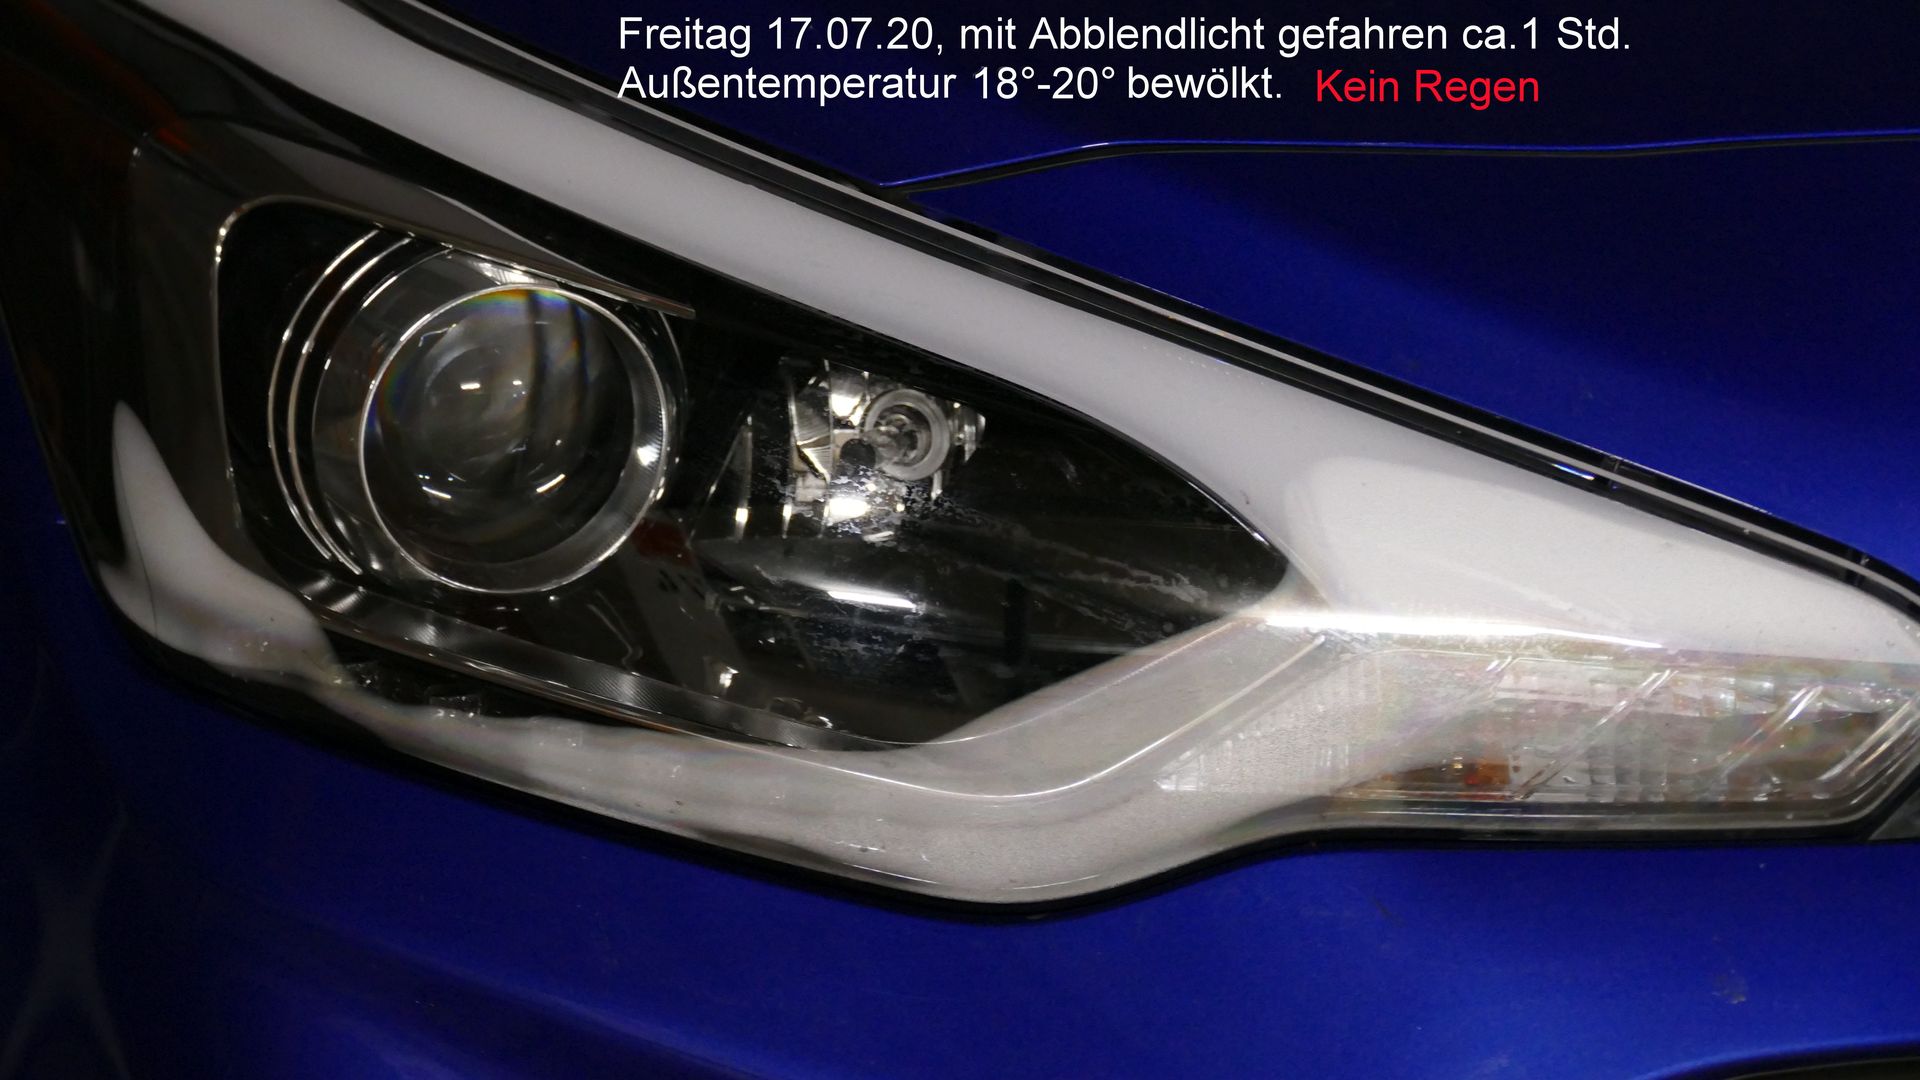 GB) Scheinwerfer beschlagen - Hyundai i20 - Hyundai Forum - HyundaiBoard.de